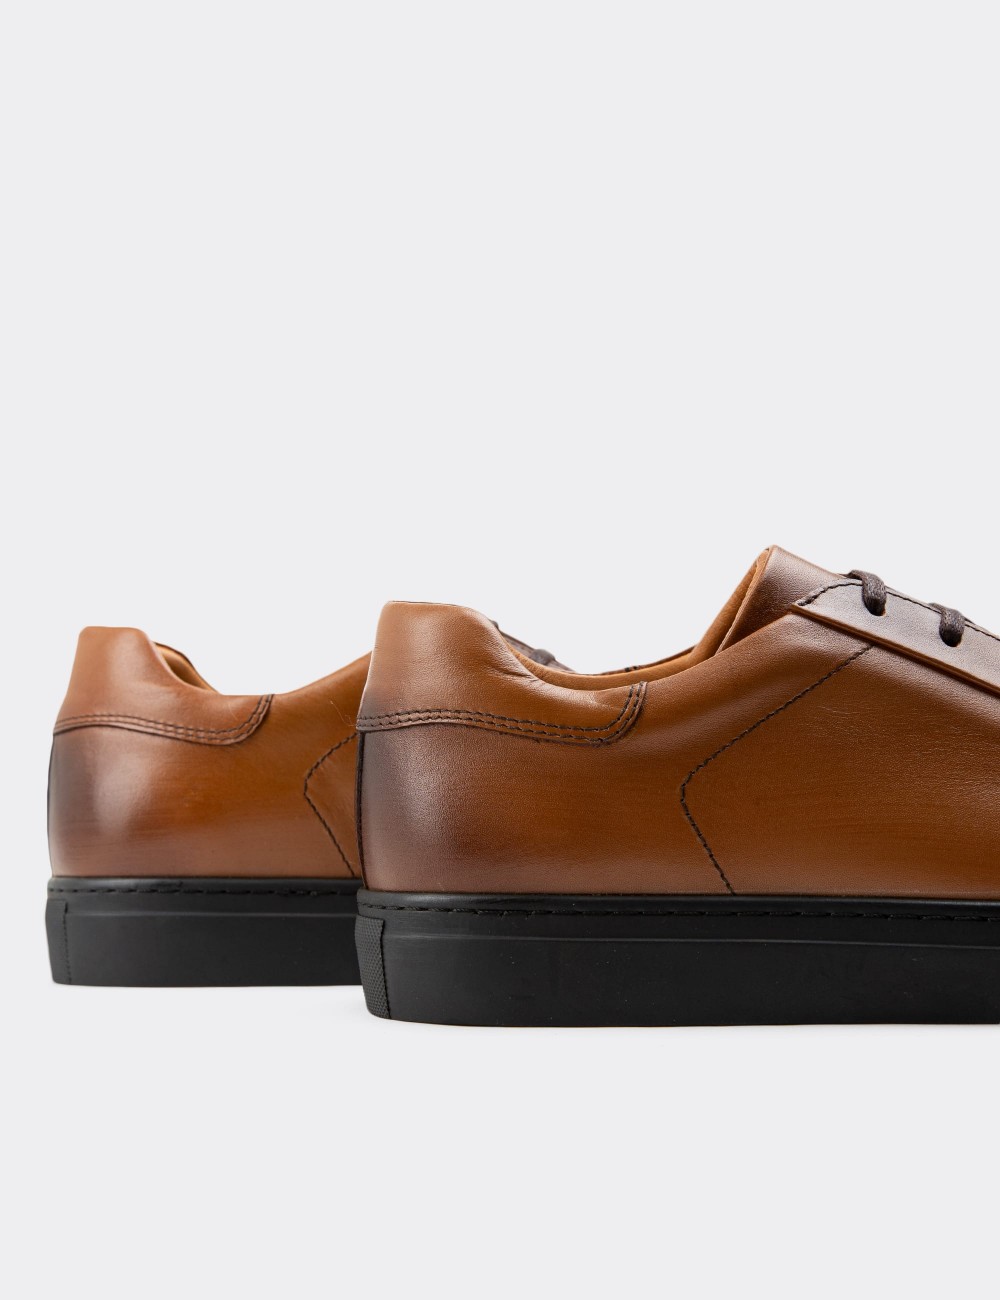 Tan Leather Sneakers - 01829MTBAC02